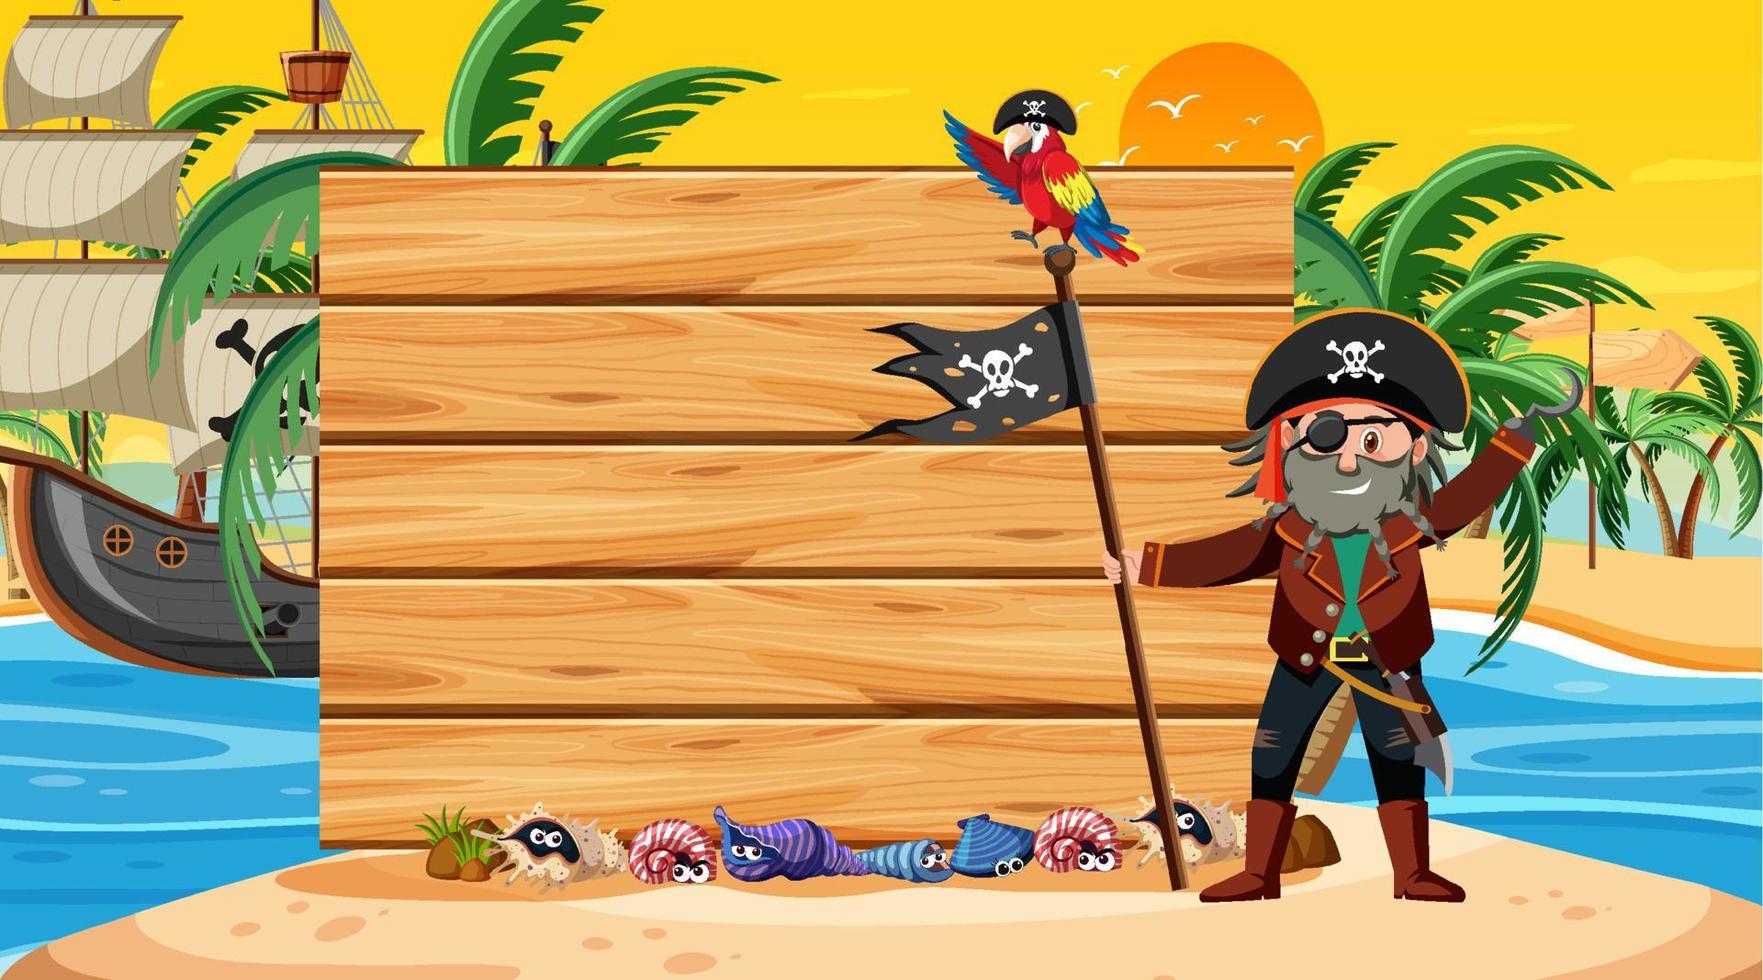 Tom banner mall med pirat man på stranden solnedgång scen vektor